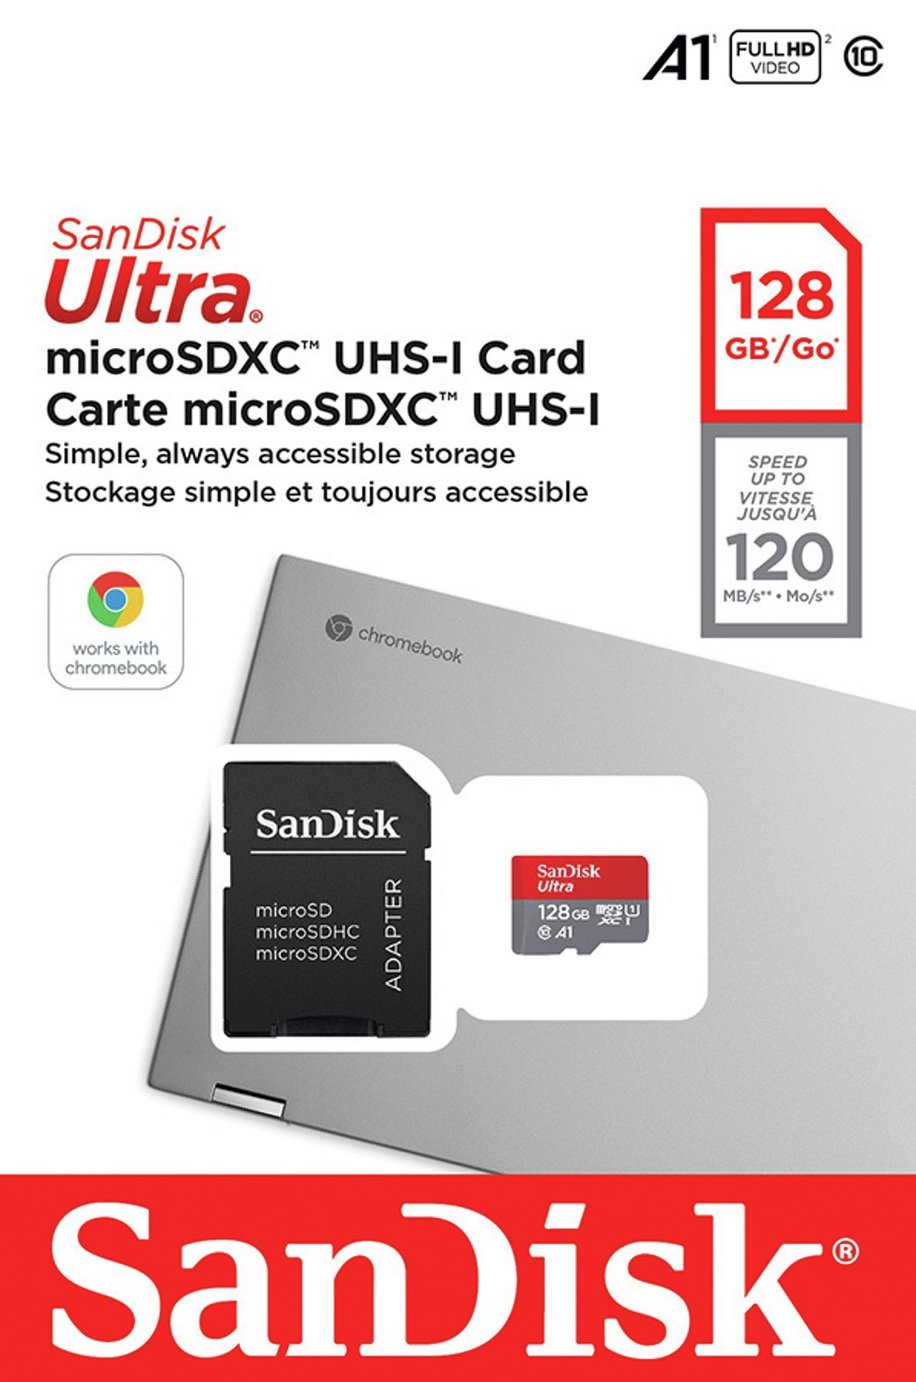 SanDisk Ultra 120MBs MicroSD UHS-I Memory Card - 128GB